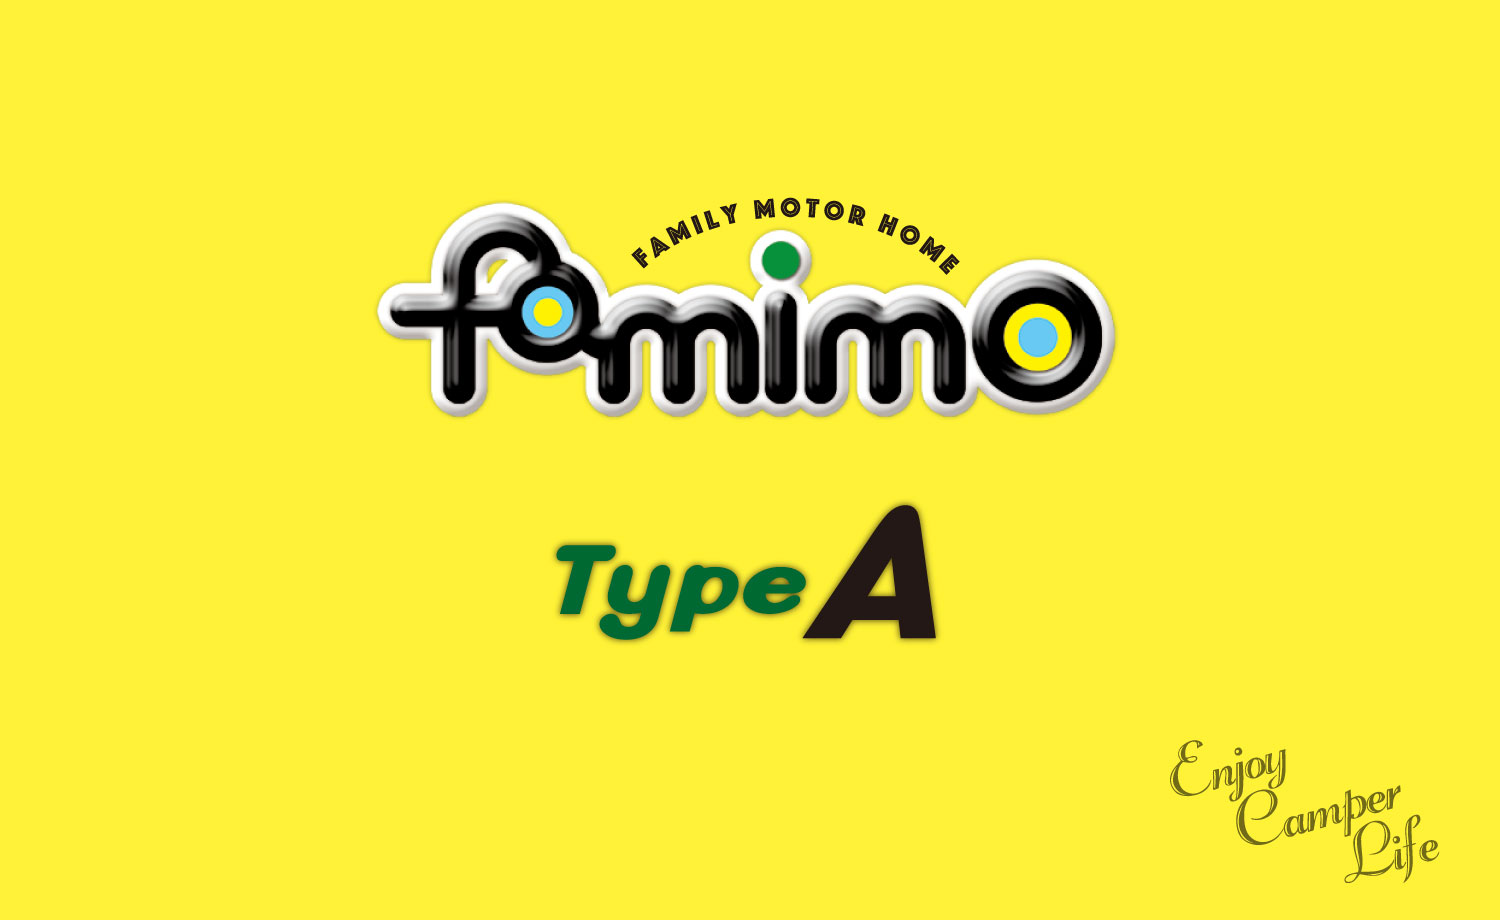 バンコンキャンピングカーファミモ -famimoのスマホ用カバー写真